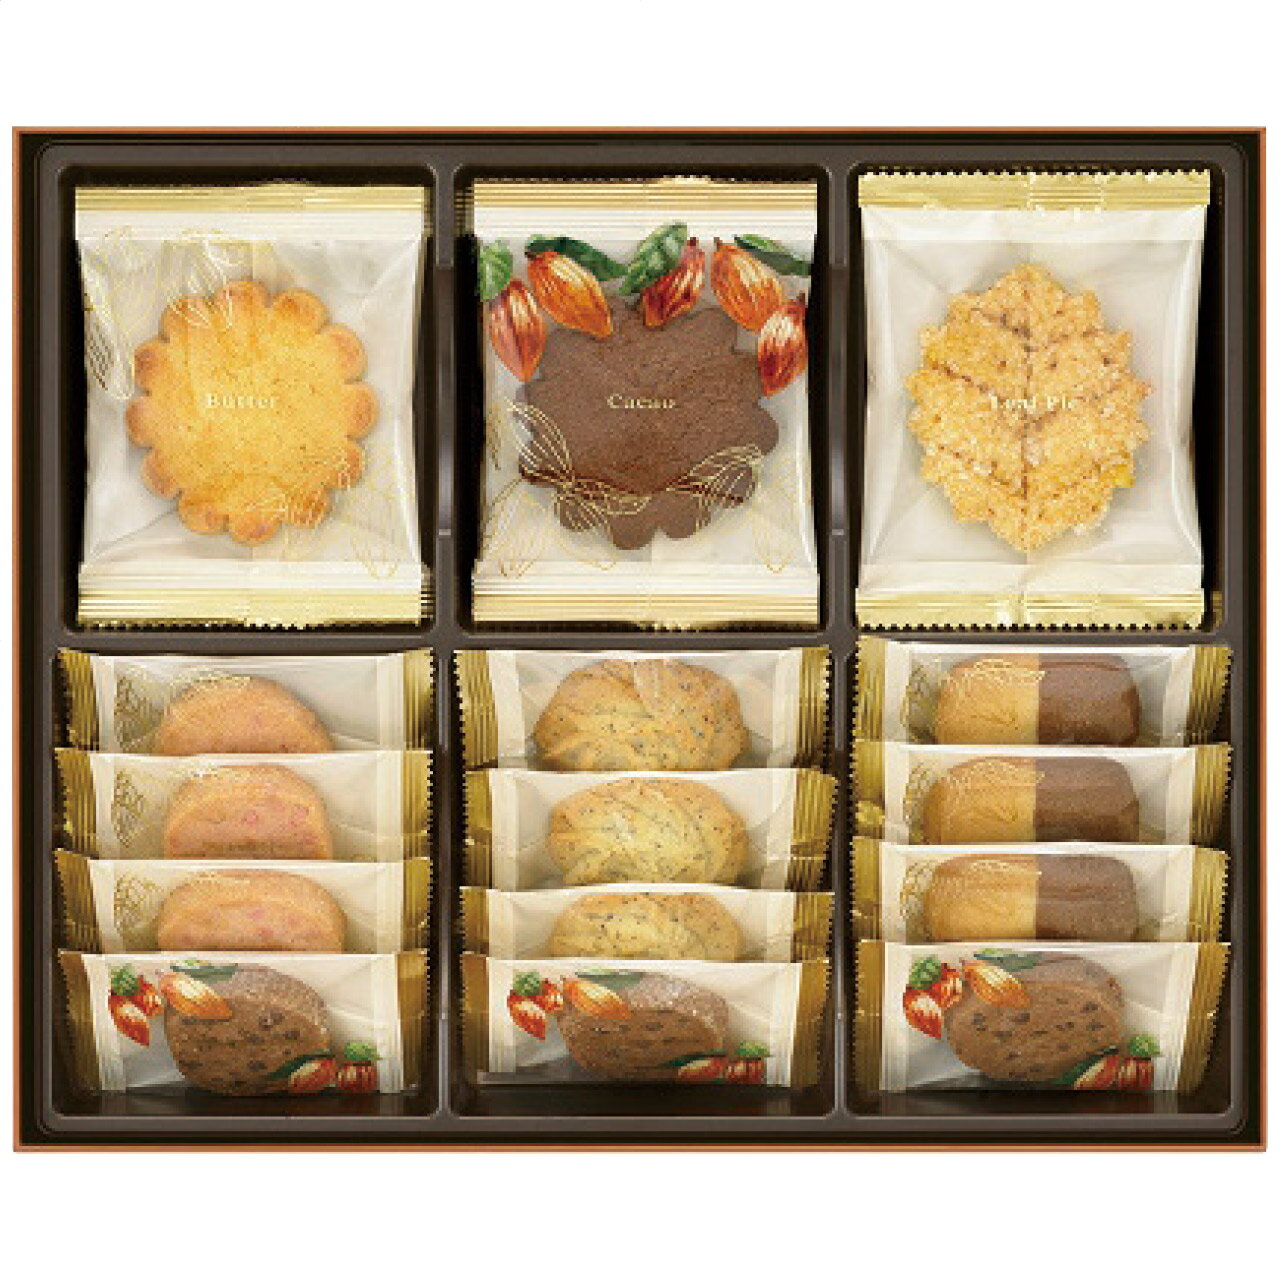 メリーチョコレート チョコレート詰め合わせ クッキーコレクション CC-SH メリーチョコレート 日本製 [APD2192-019]| 洋菓子スイーツ・お菓子 洋菓子 洋菓子セット・詰め合わせ